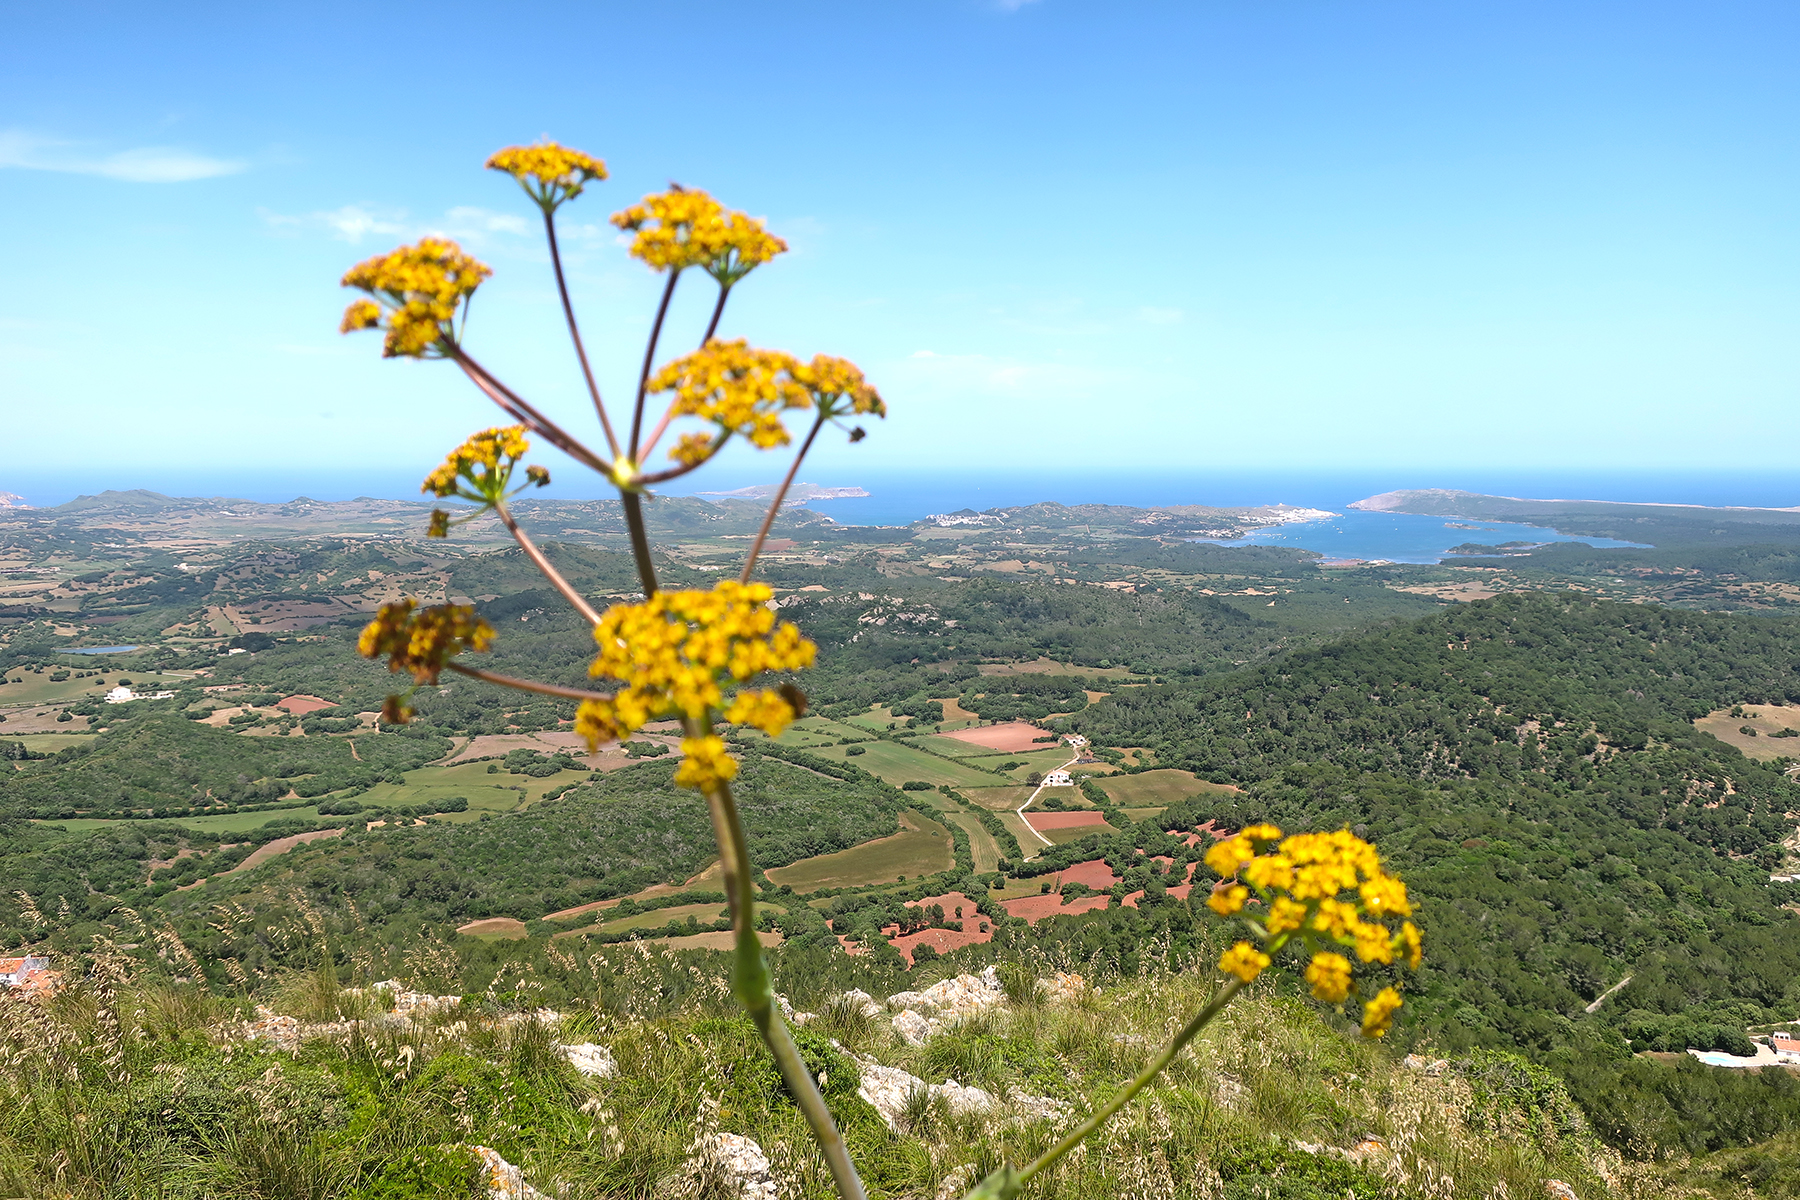 Menorca statt Mallorca: 15 Highlights, die man im Urlaub auf Menorca erleben muss